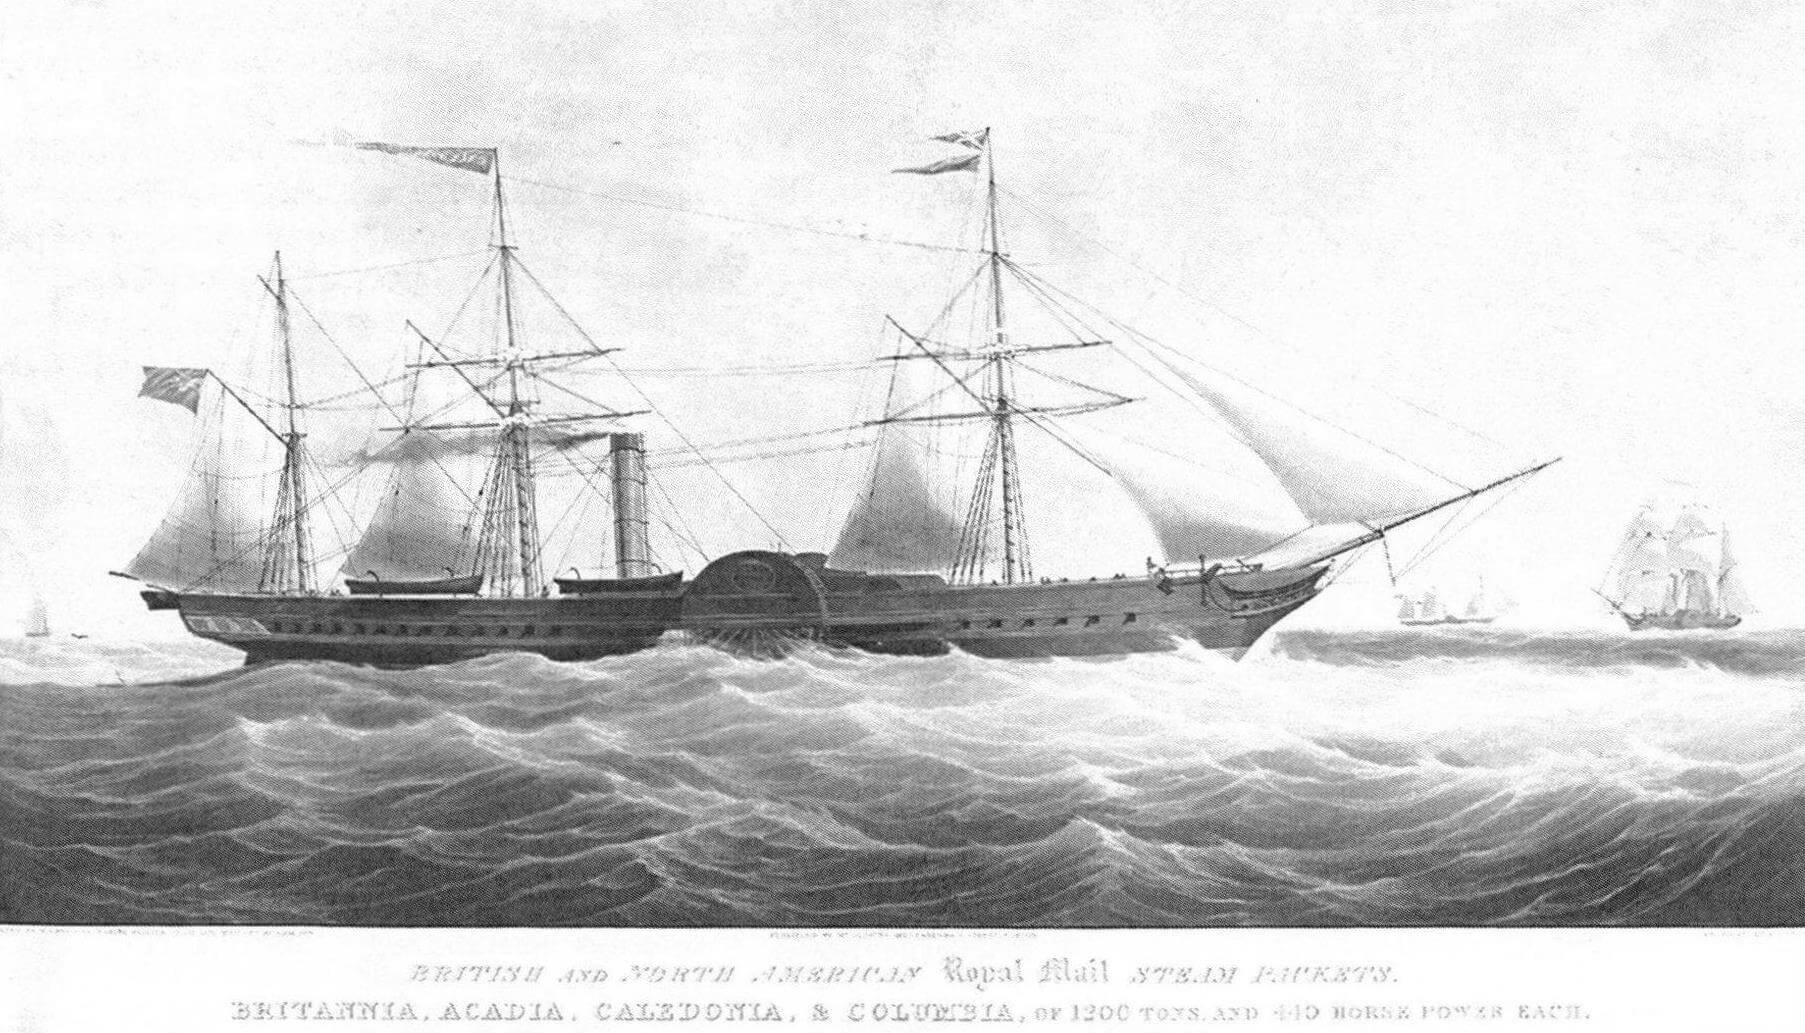 Литография, на которой изображен один из первых лайнеров «Бритиш энд Норт Америэн Рой-ял Мейл Стим Пакет Компании». В оригинальной англоязычной подписи указаны названия всех четырех судов - «Britannia», «Acadia», «Caledonia» & «Columbia»